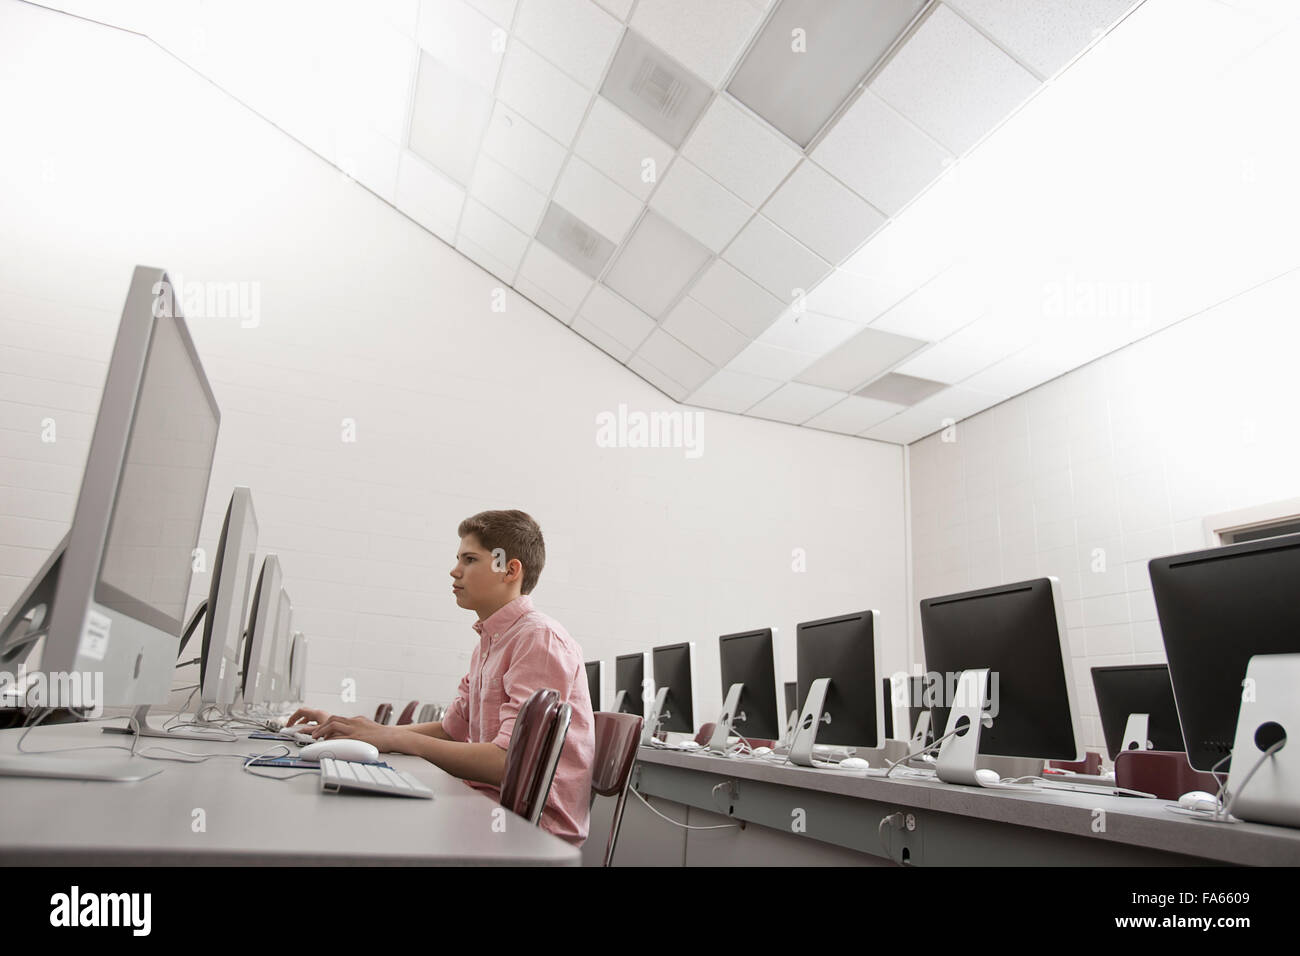 Einen Schulraum, einen Computerraum mit Reihen von Bildschirmen und Sitzgelegenheiten. Ein junger Mensch sitzt an einem Terminal arbeiten. Stockfoto